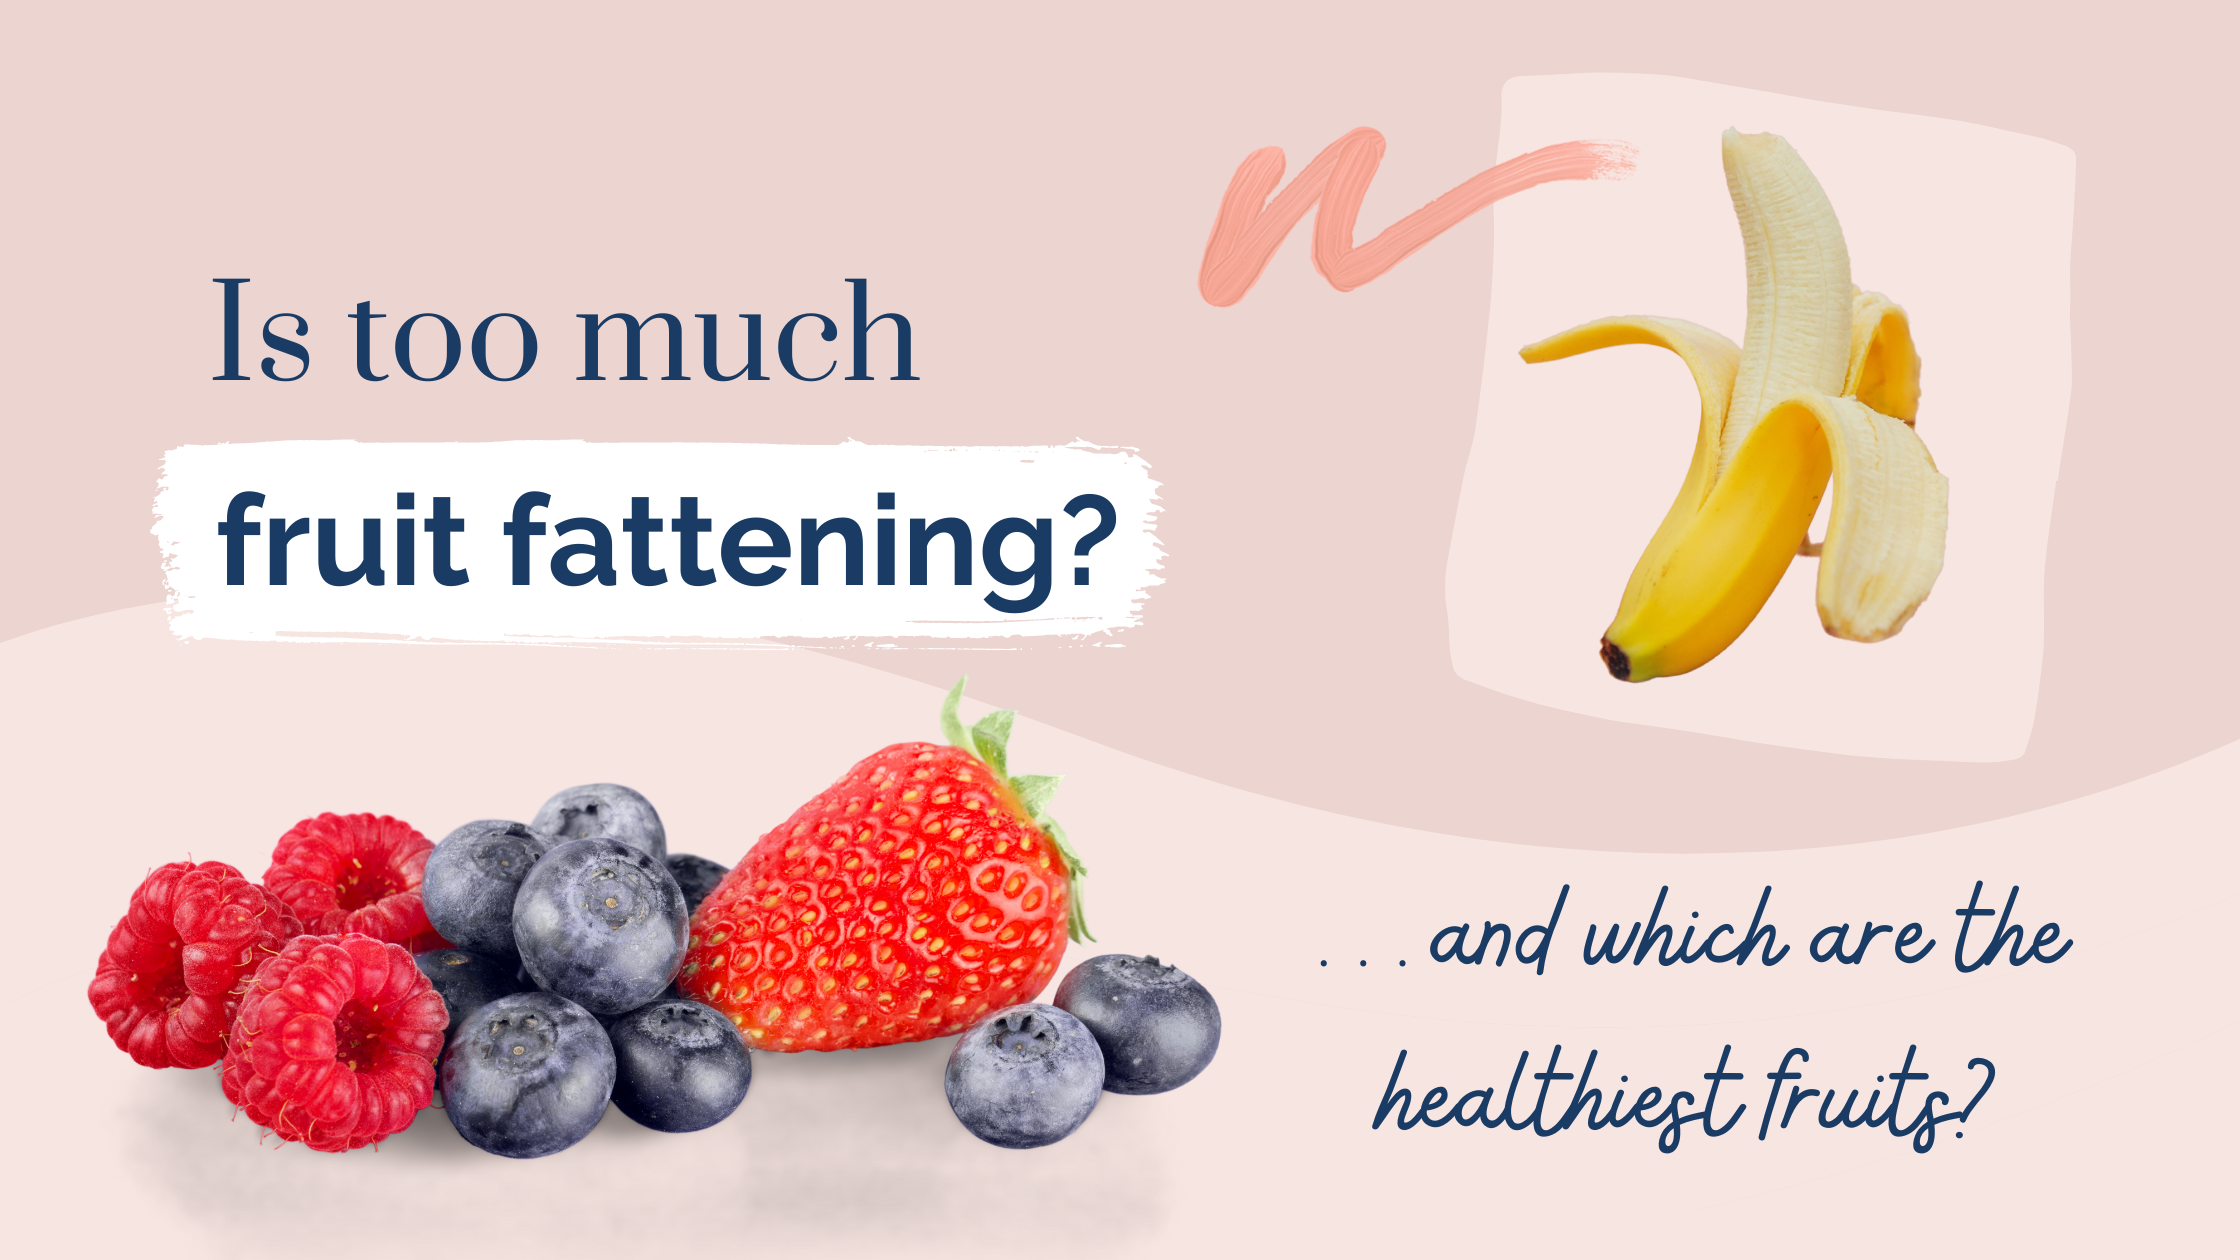 Is fruit fattening